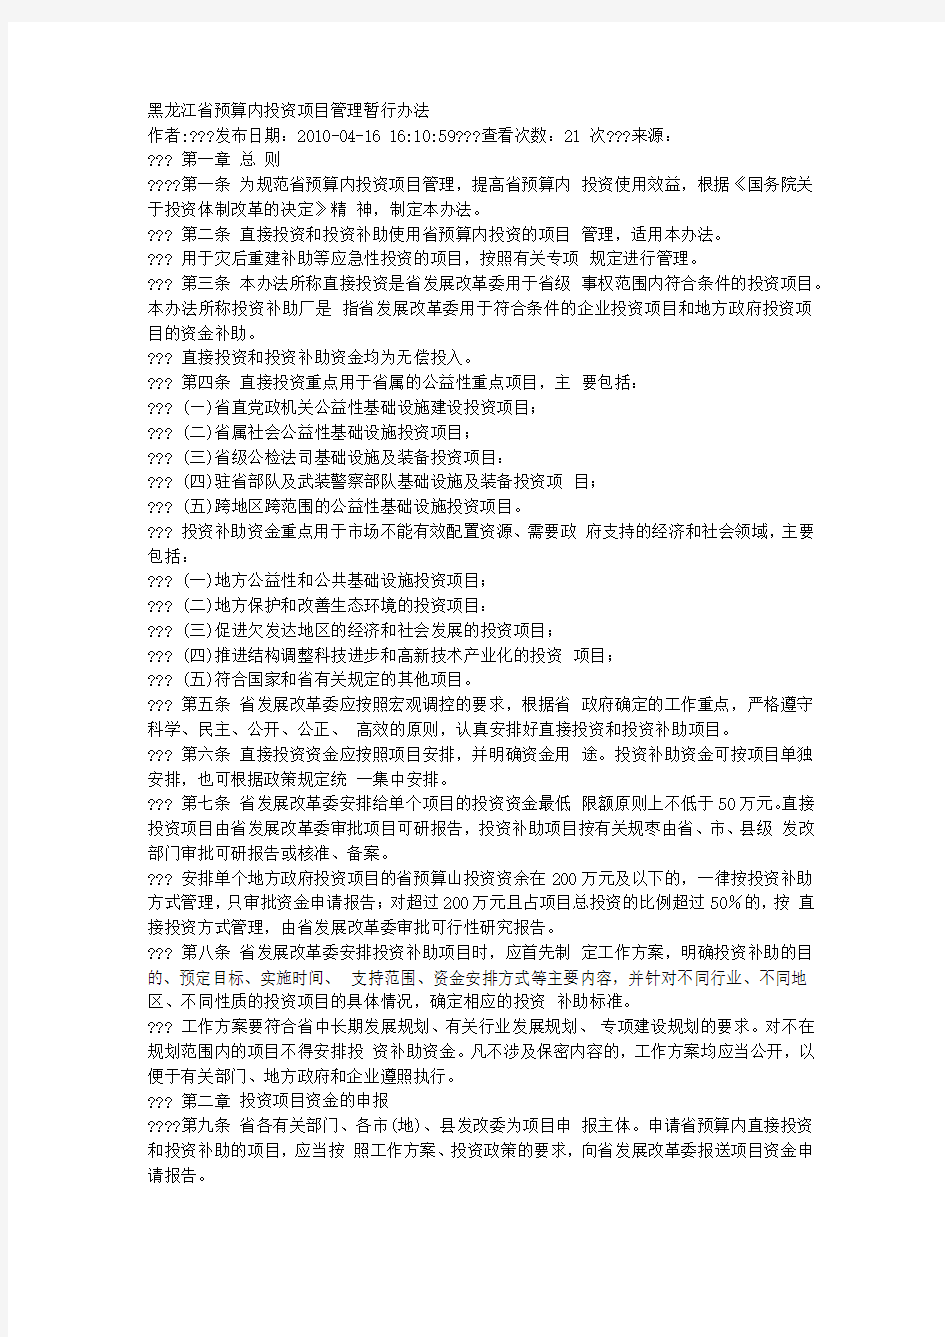 黑龙江省预算内投资项目管理暂行办法